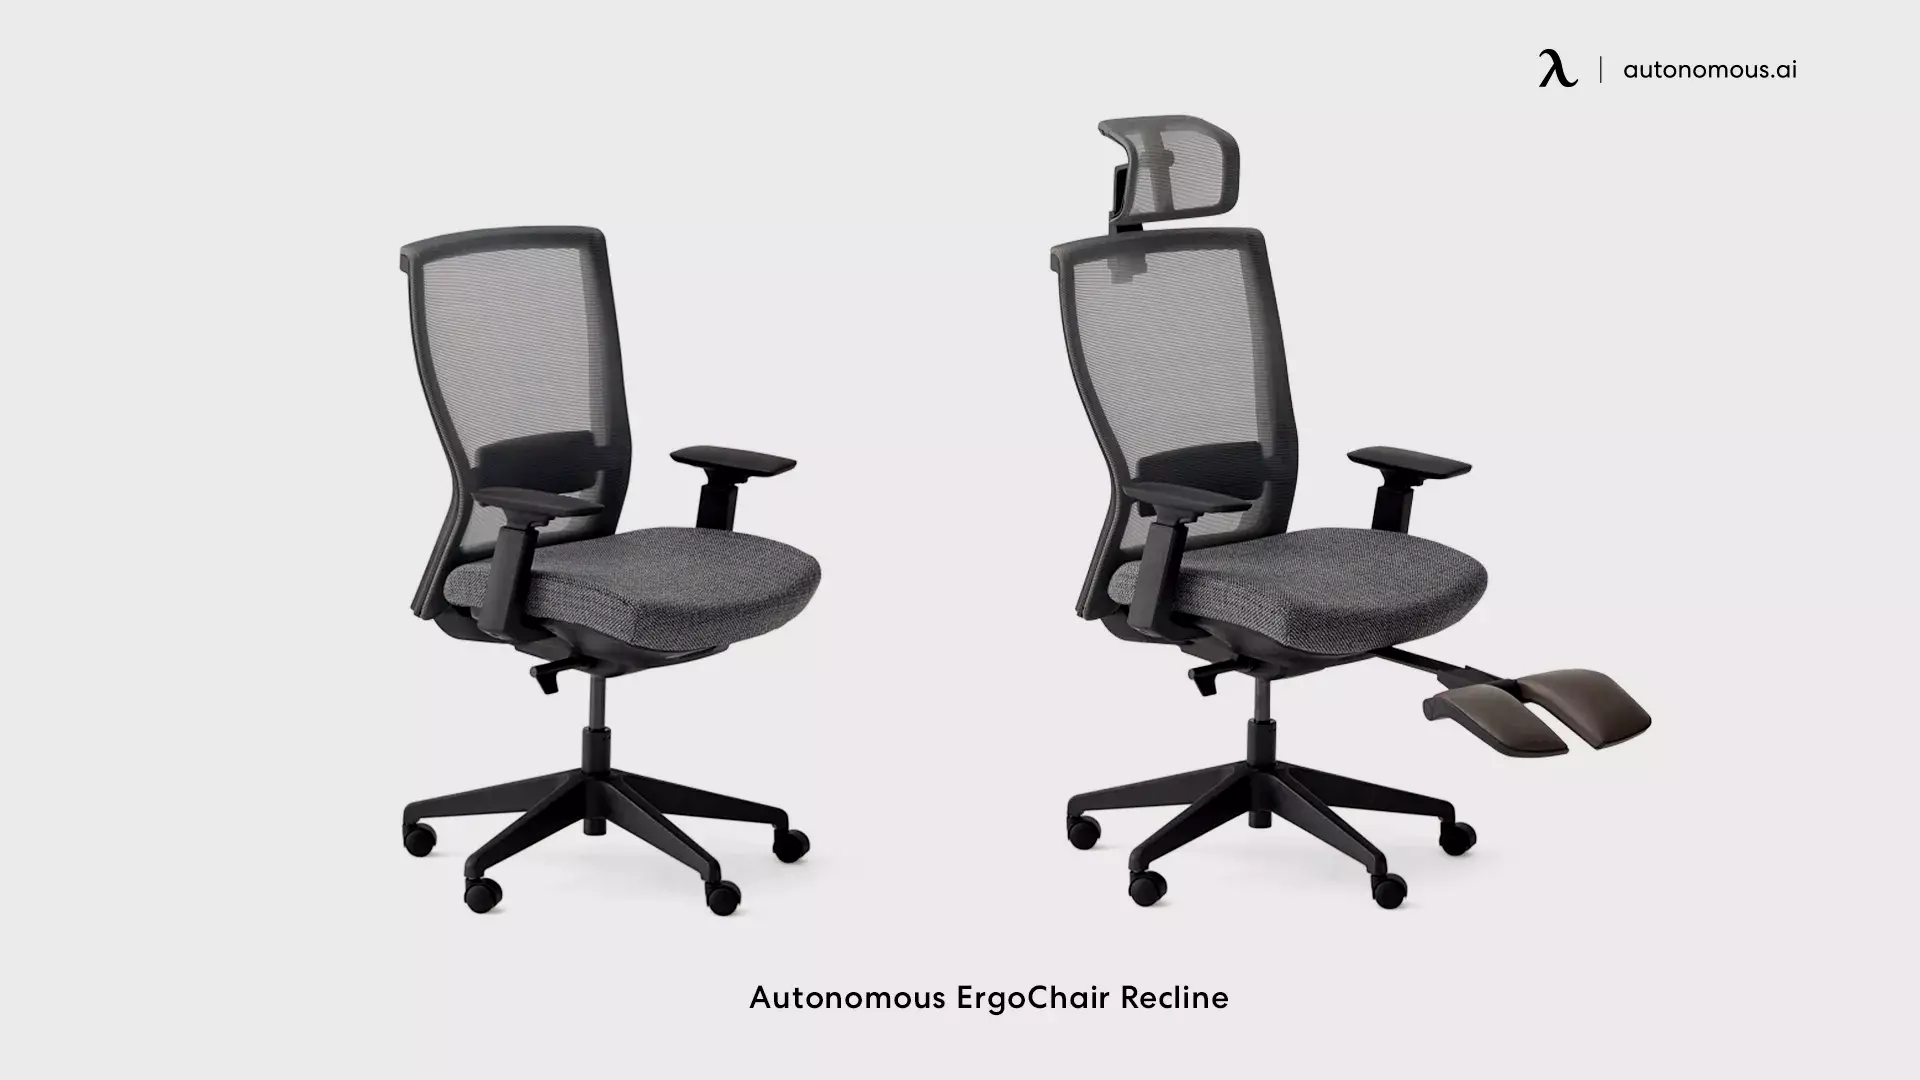 Autonomous ErgoChair Recline swivel office chair